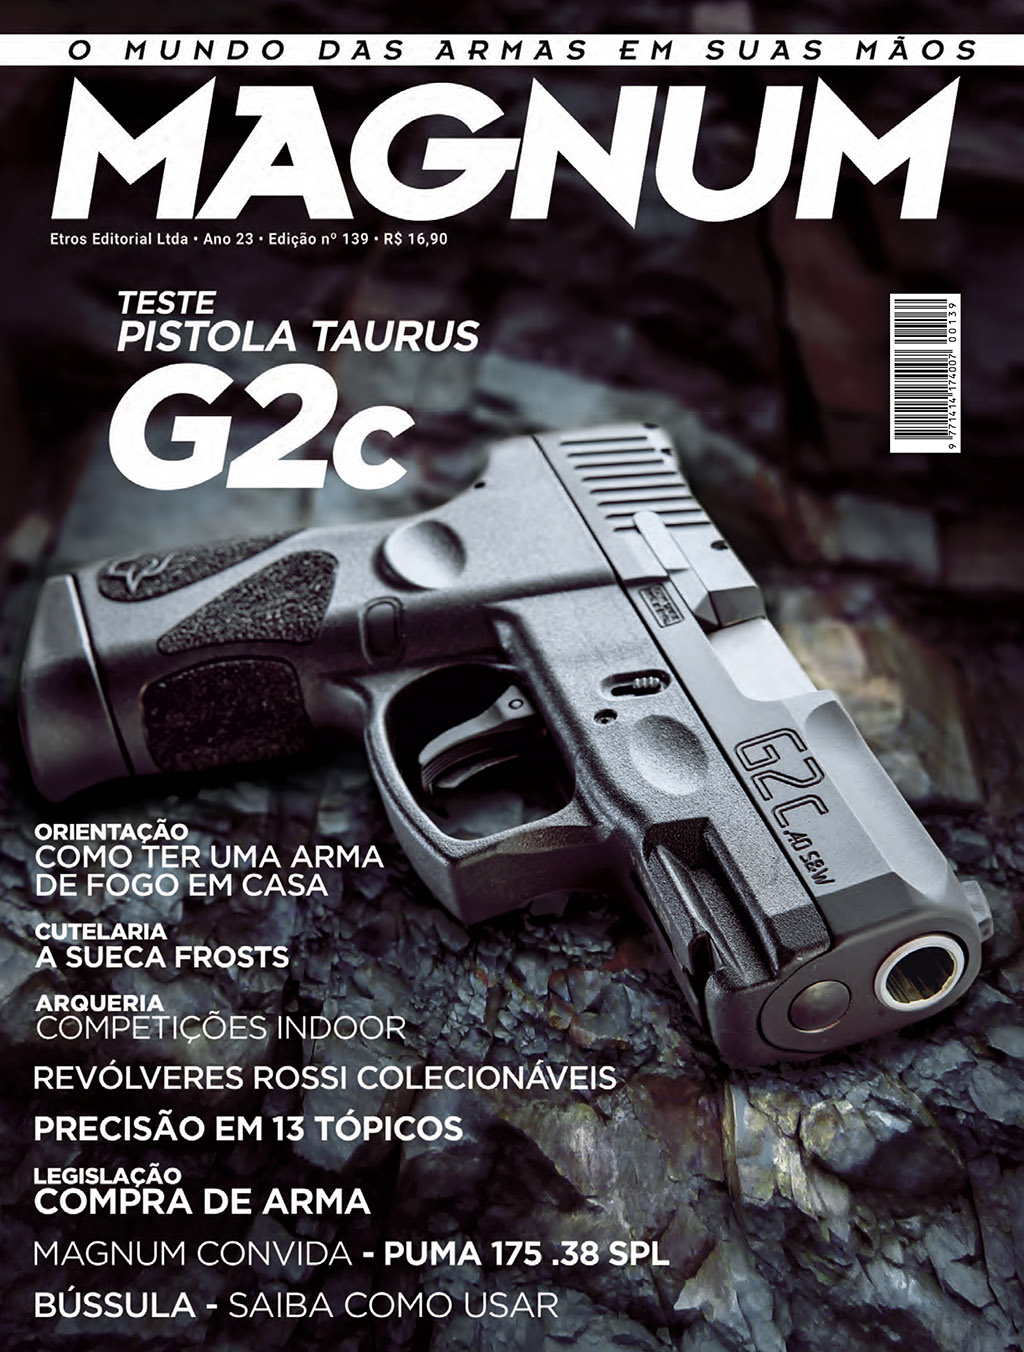 Revista Magnum ed 139 - G2c